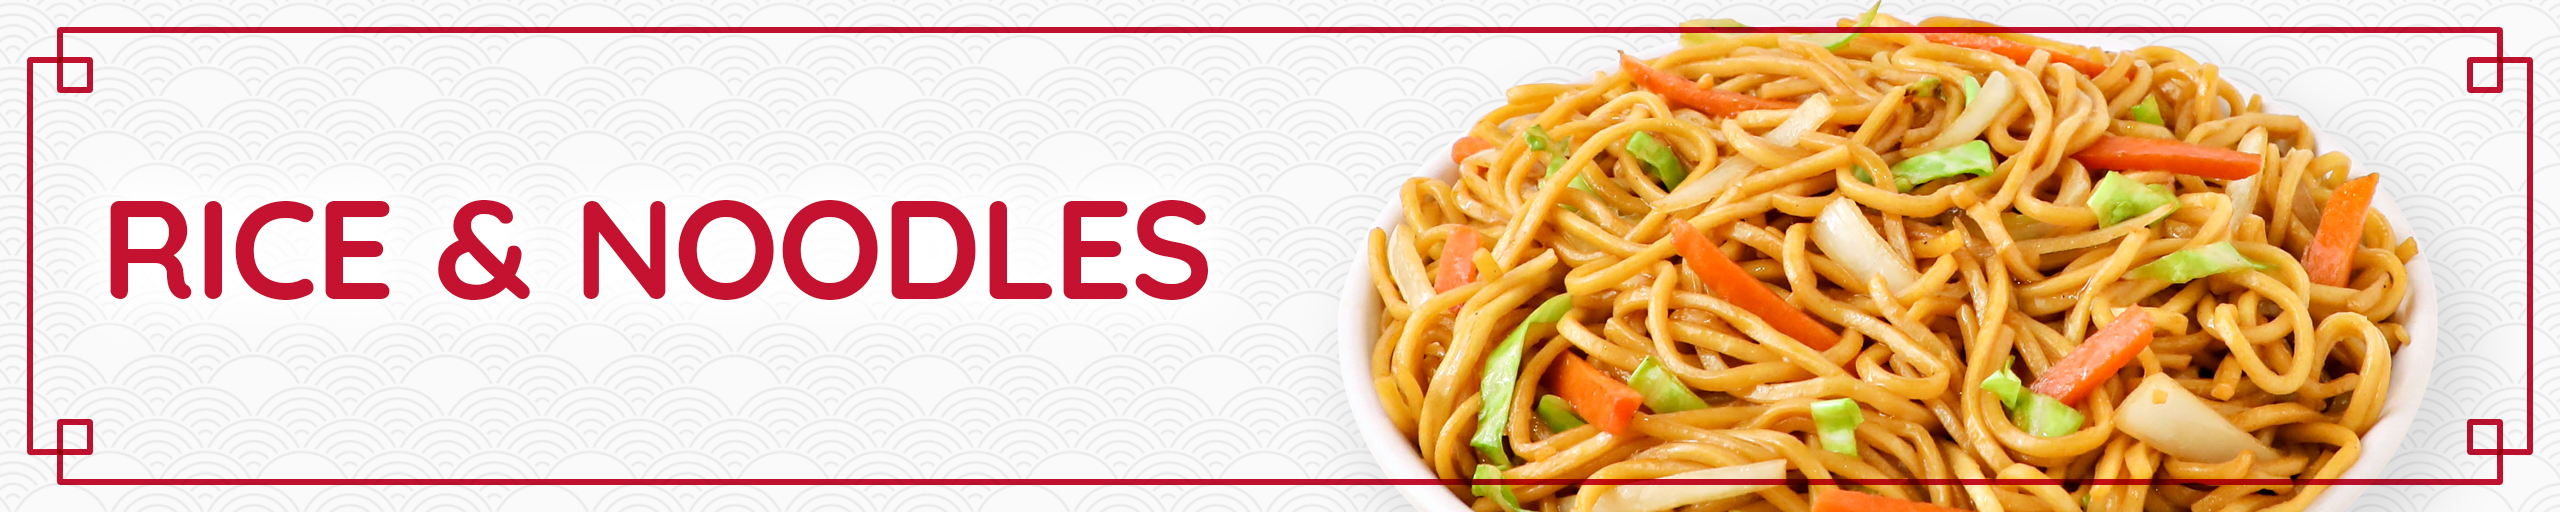 Rice & Noodles web banner